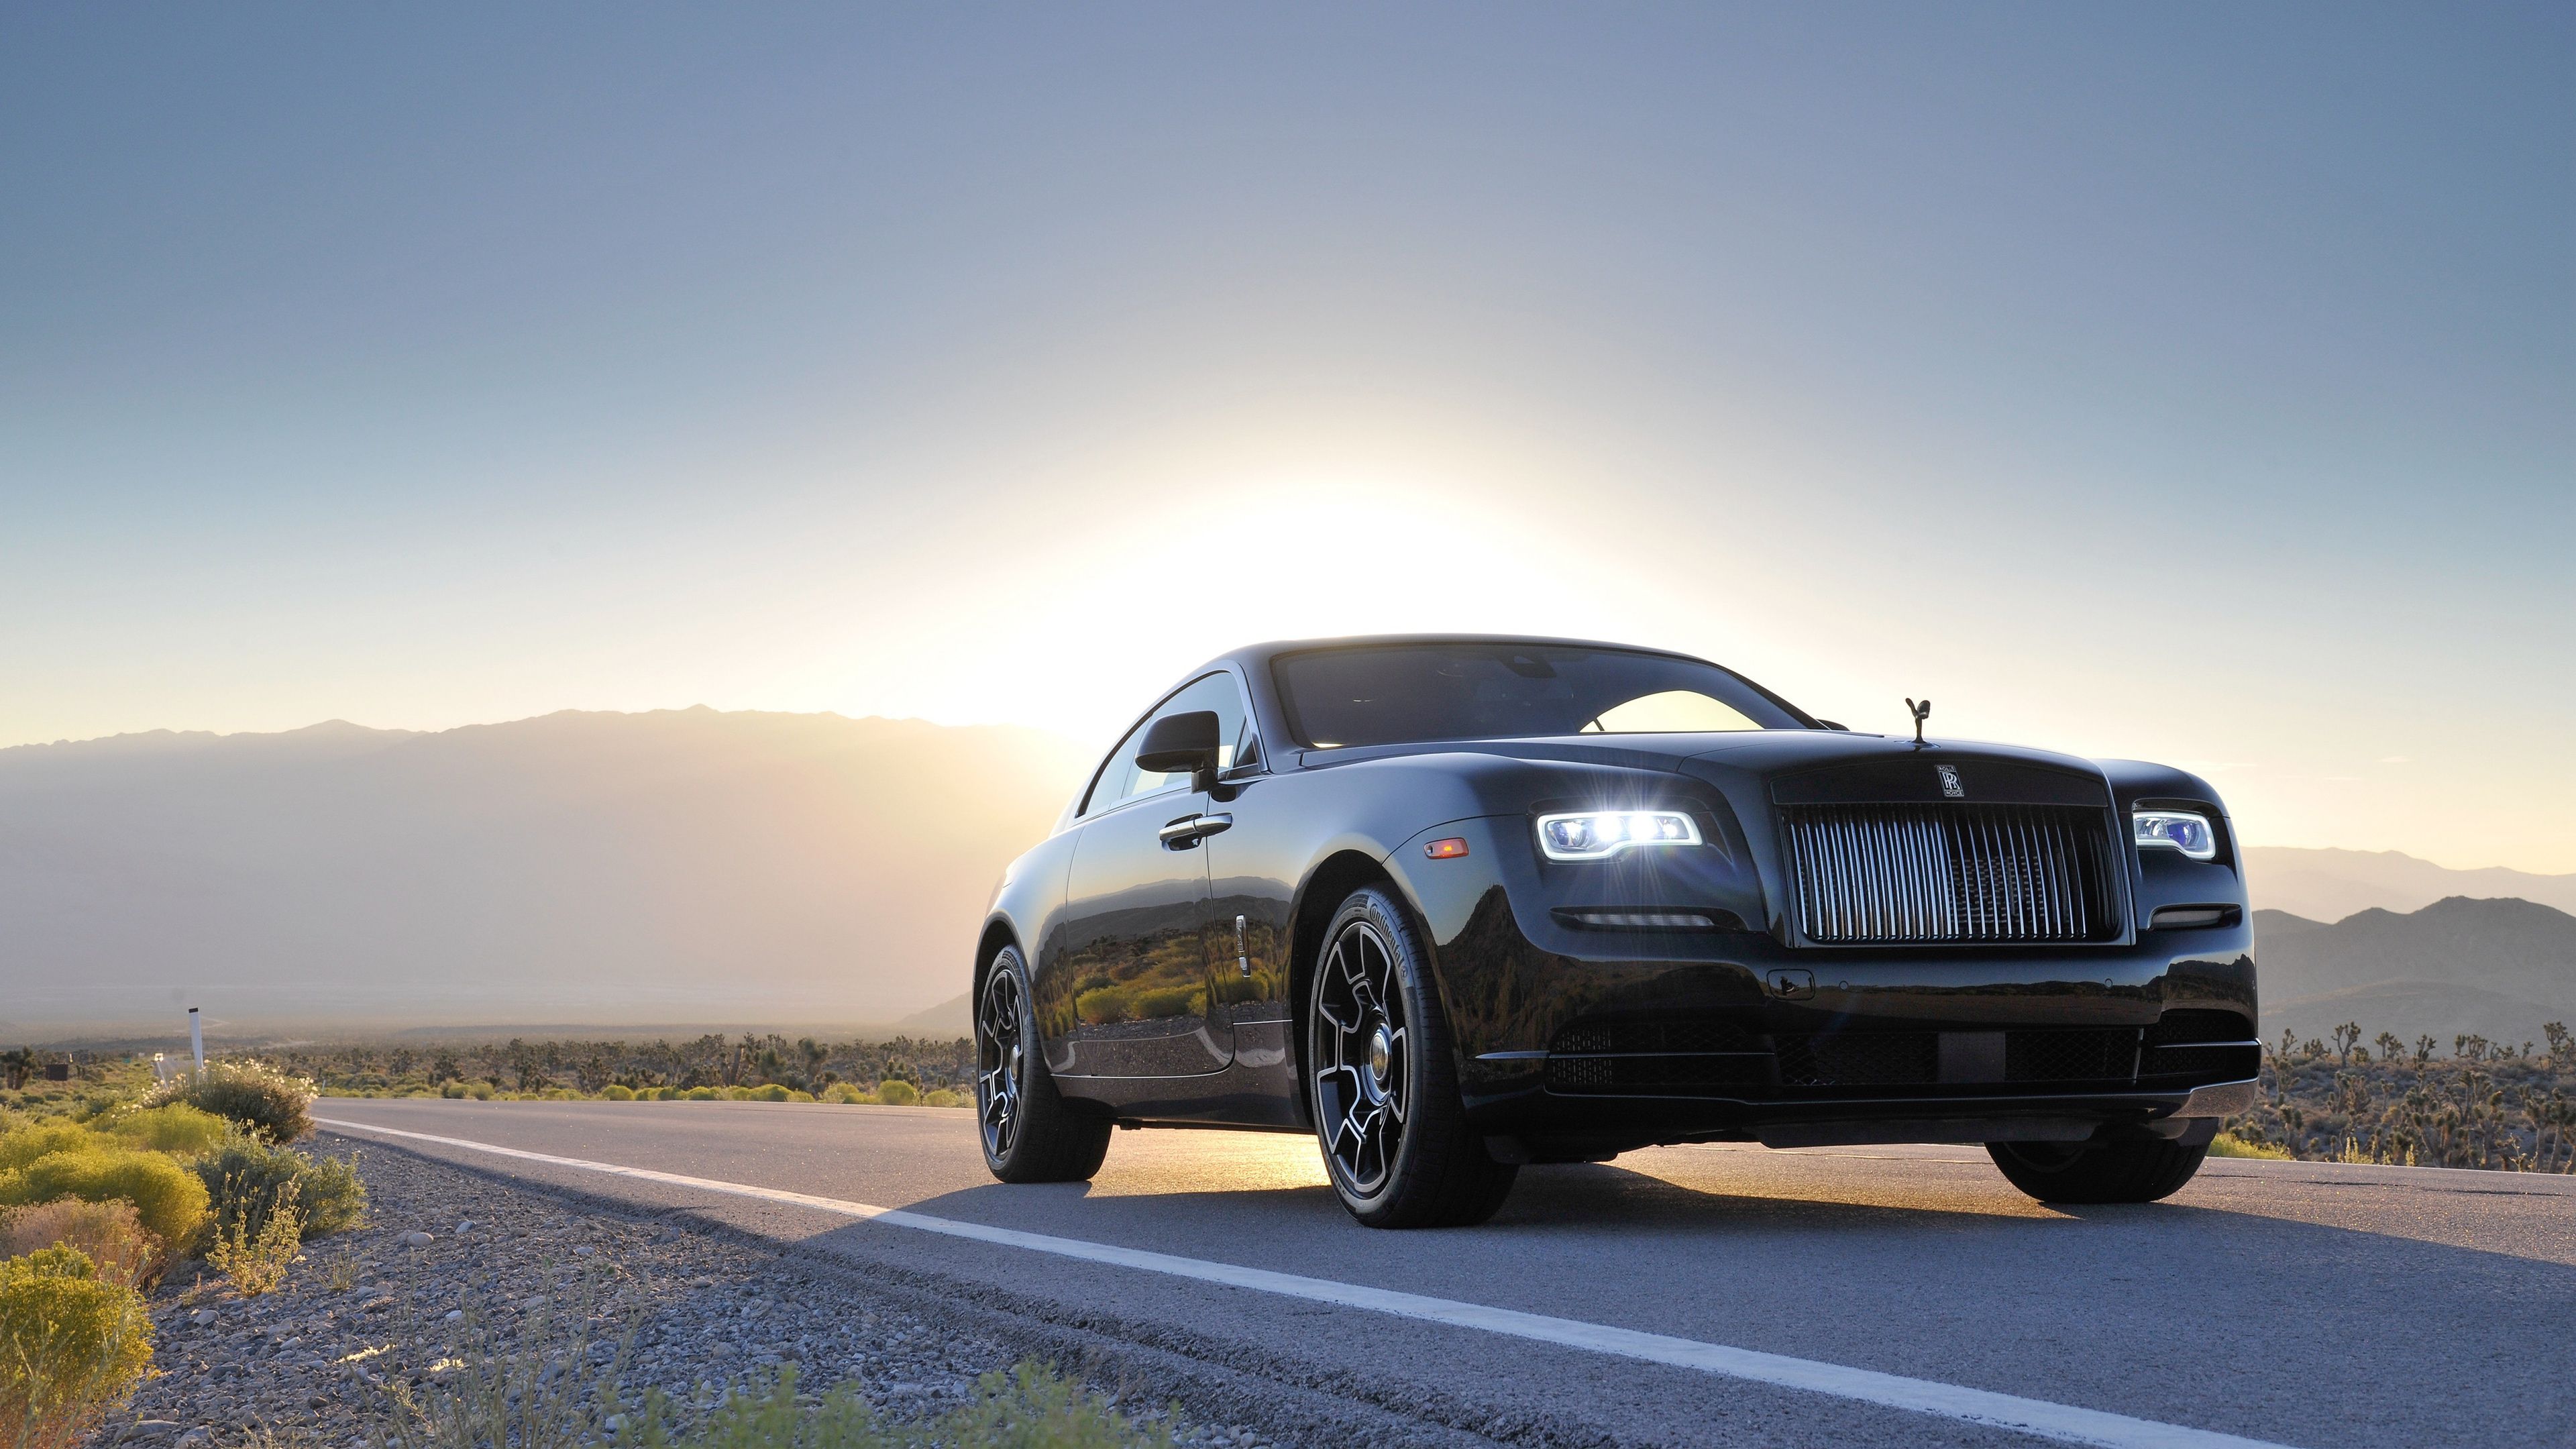 Rolls Royce Wallpapers  Top 35 Best Rolls Royce Backgrounds Download